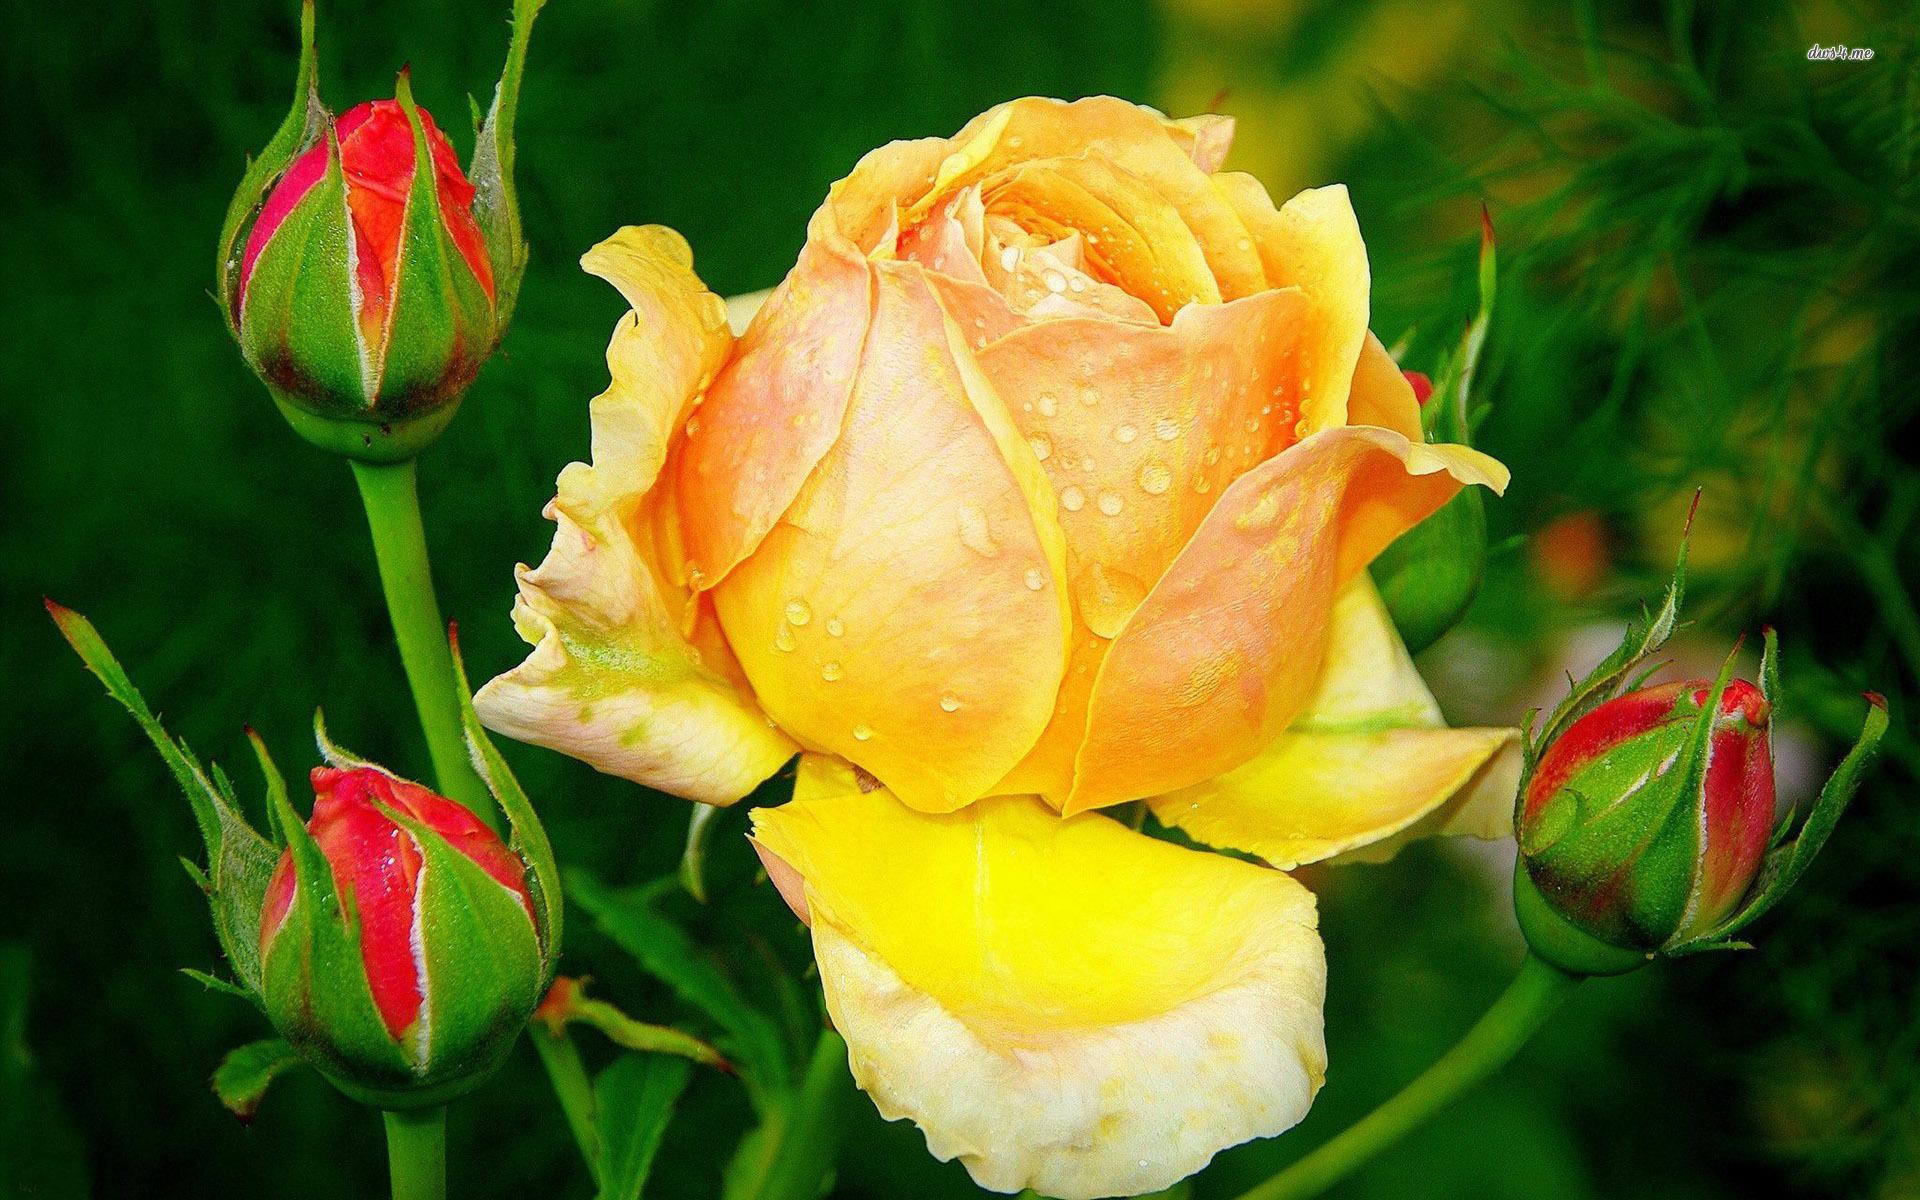 Hoa hồng vàng: Hãy ngắm nhìn những bông hoa hồng vàng tuyệt đẹp, mang đến sự ấm áp và tình yêu. Họ biểu tượng cho sự giàu có và danh vọng, và cũng là biểu tượng cho sự trân trọng và bày tỏ tình yêu. Hãy cùng chiêm ngưỡng hình ảnh đầy cảm hứng về những bông hoa đẹp này.